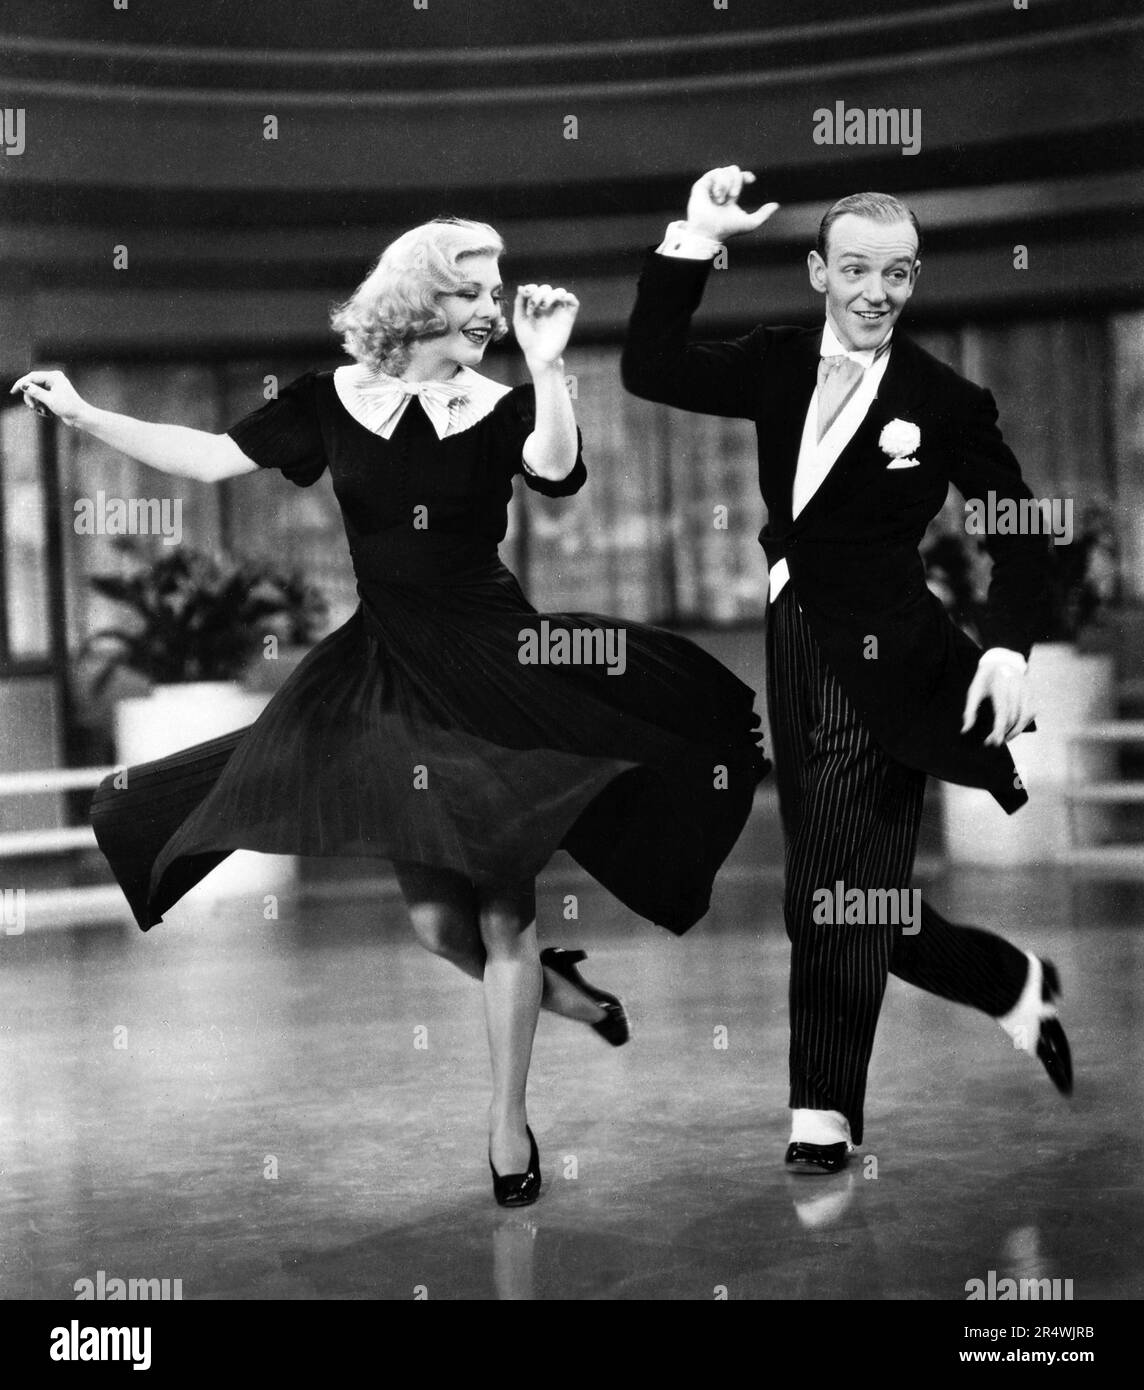 Swing Time ist ein 1936 American musical comedy Film hauptsächlich in New York City und starring Fred Astaire und Ginger Rogers. Es verfügt über Helen Broderick und Georges Metaxa. Der Film wurde von George Stevens geleitet. Stockfoto